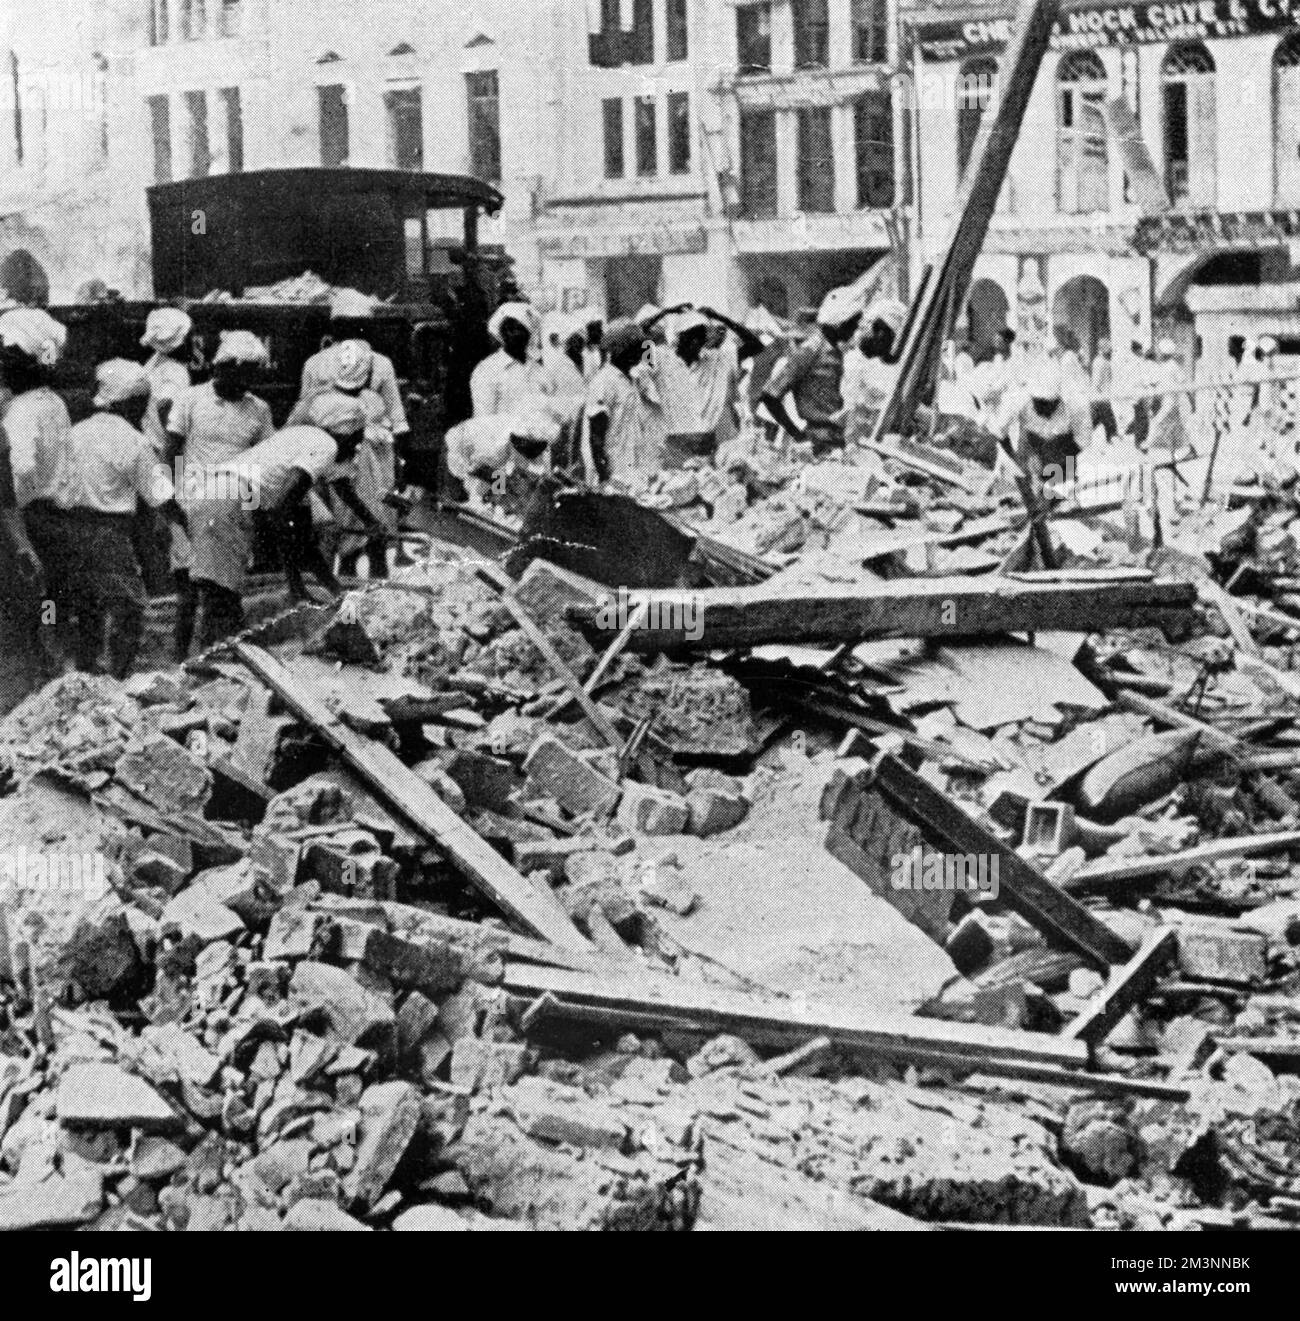 Einwohner Singapurs schätzen den Schaden ein, den ein japanischer Luftangriff in der Nacht zuvor verursacht hat. Datum: Januar 1942 Stockfoto